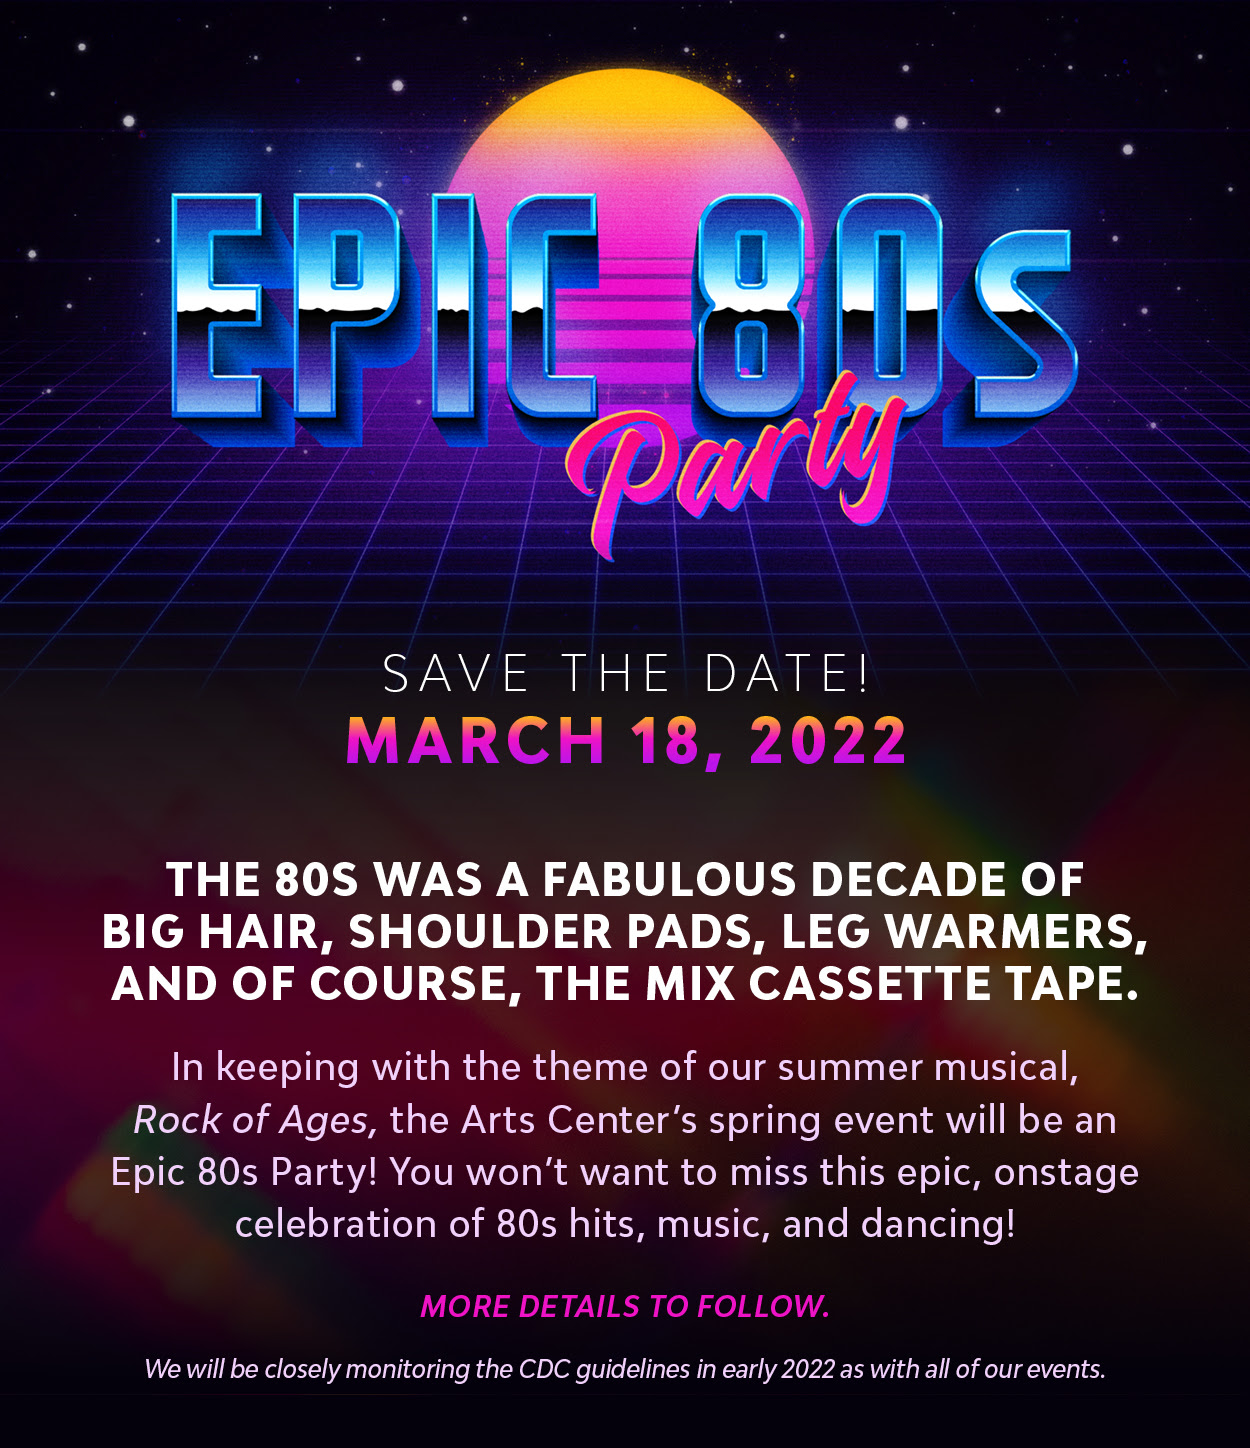 Hilton Head Epic 80s Party